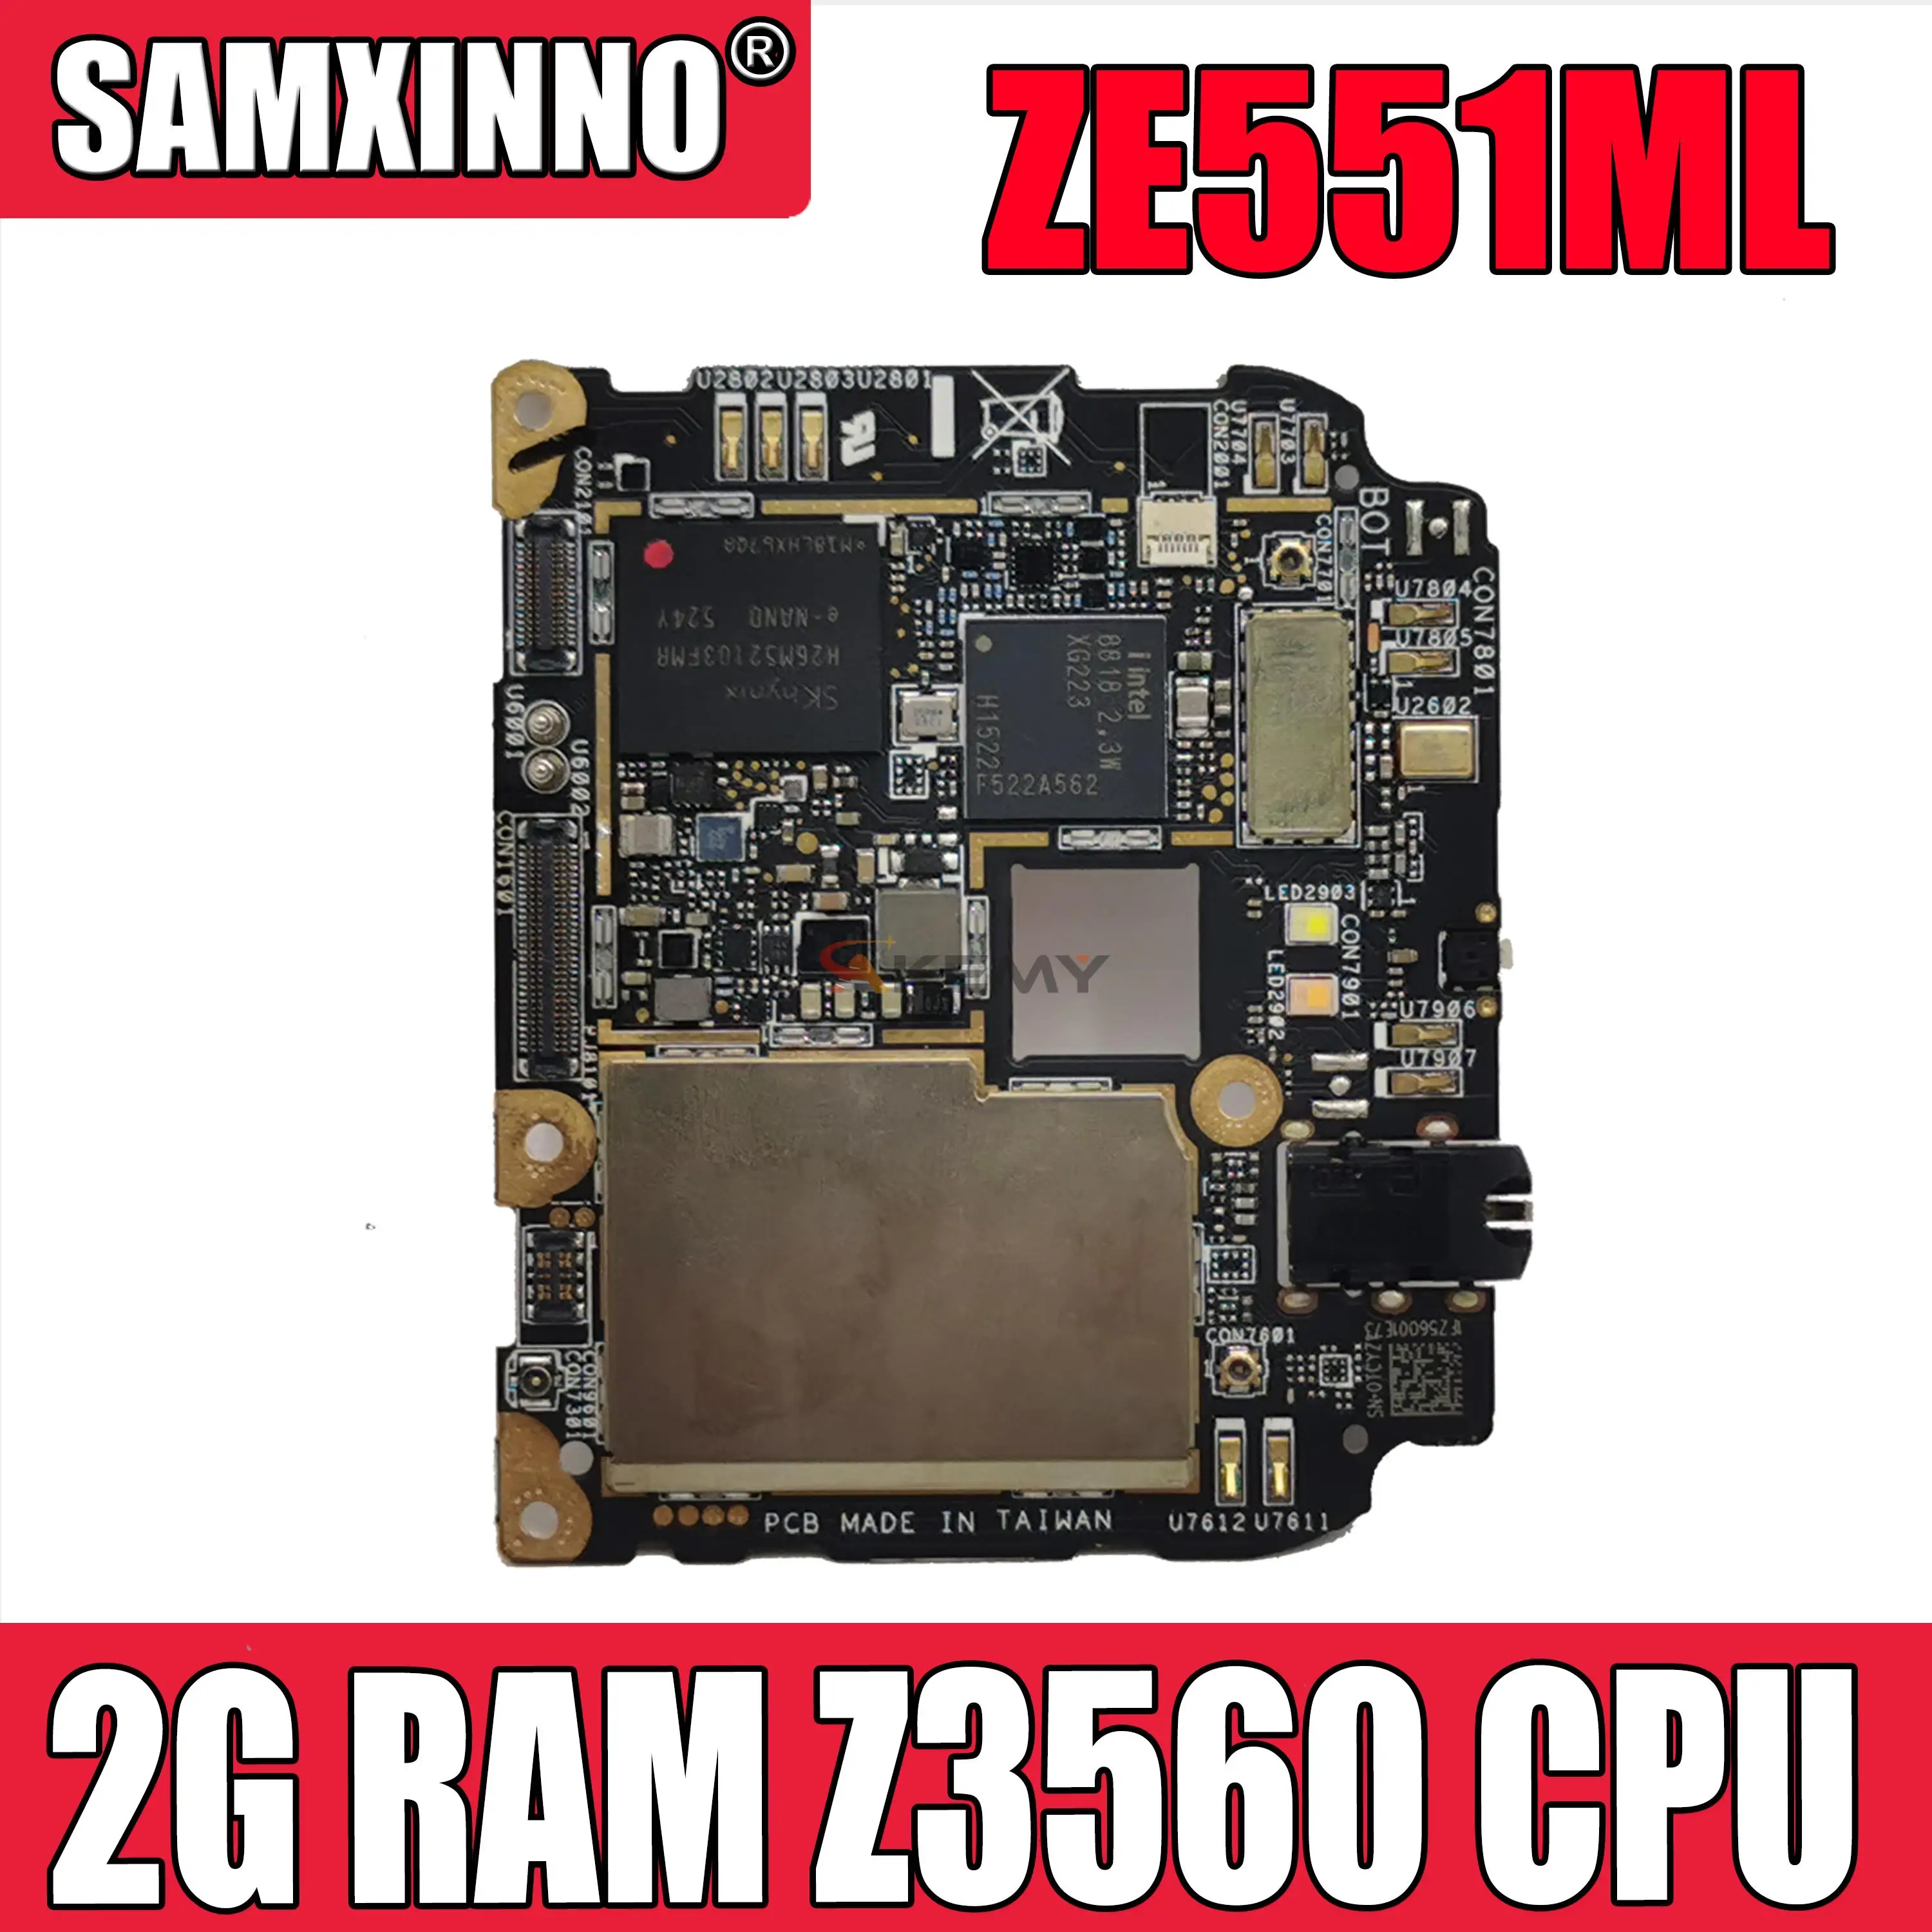 

Материнская плата Akemy для ASUS ZenFone 2 ZE551ML, материнская плата 2 гб озу, процессор Z3560, логическая плата, схемы, комплекты аксессуаров